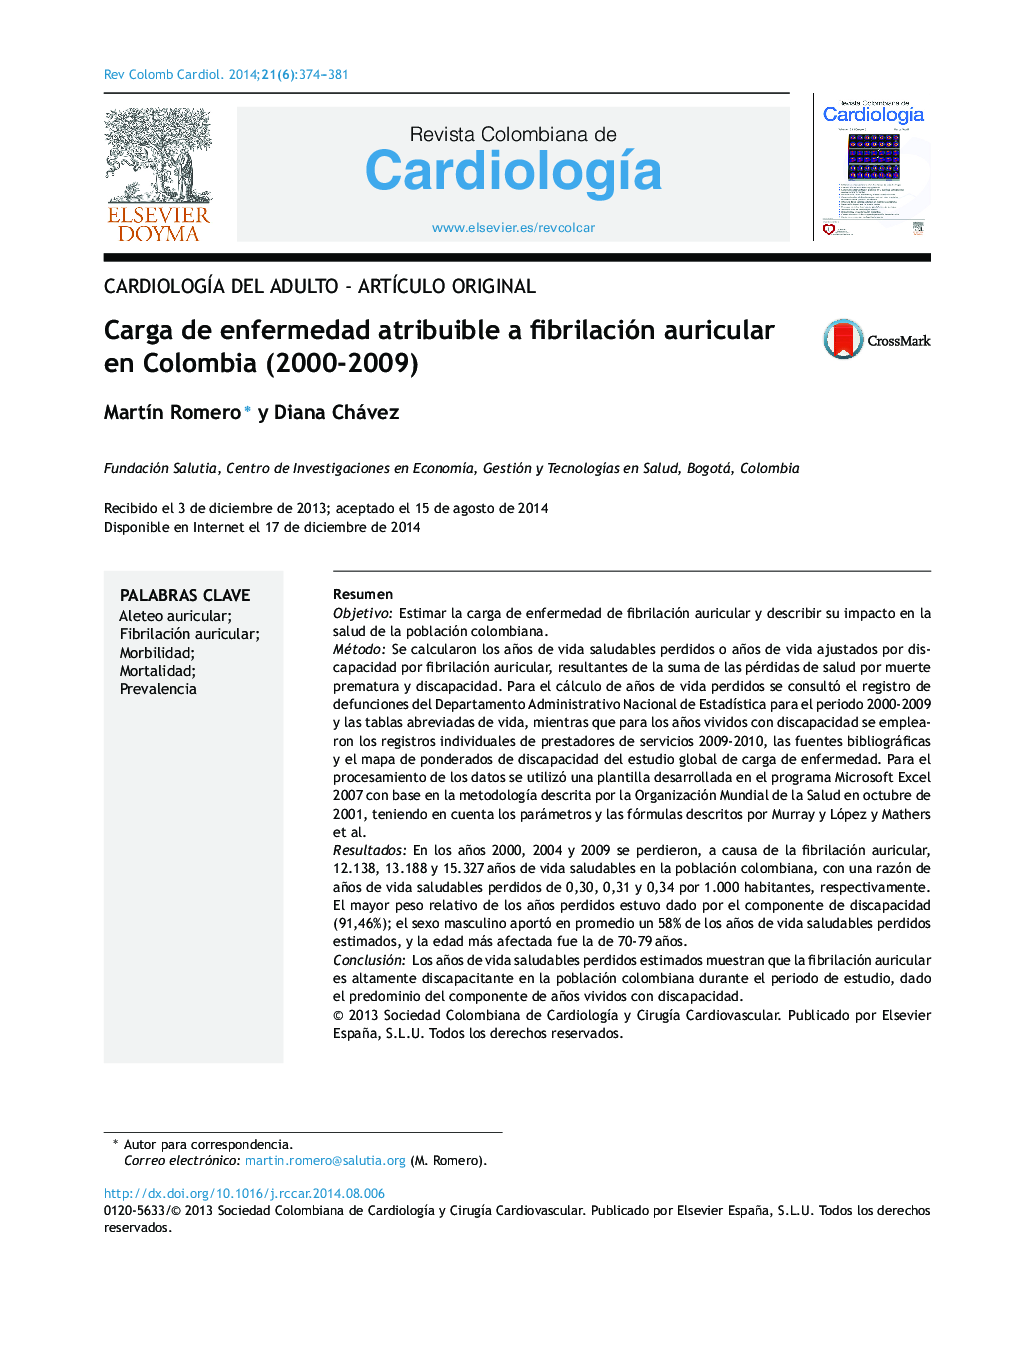 بار بیماری که مربوط به فیبریلاسیون دهلیزی در کلمبیا می باشد (2000-2009) 